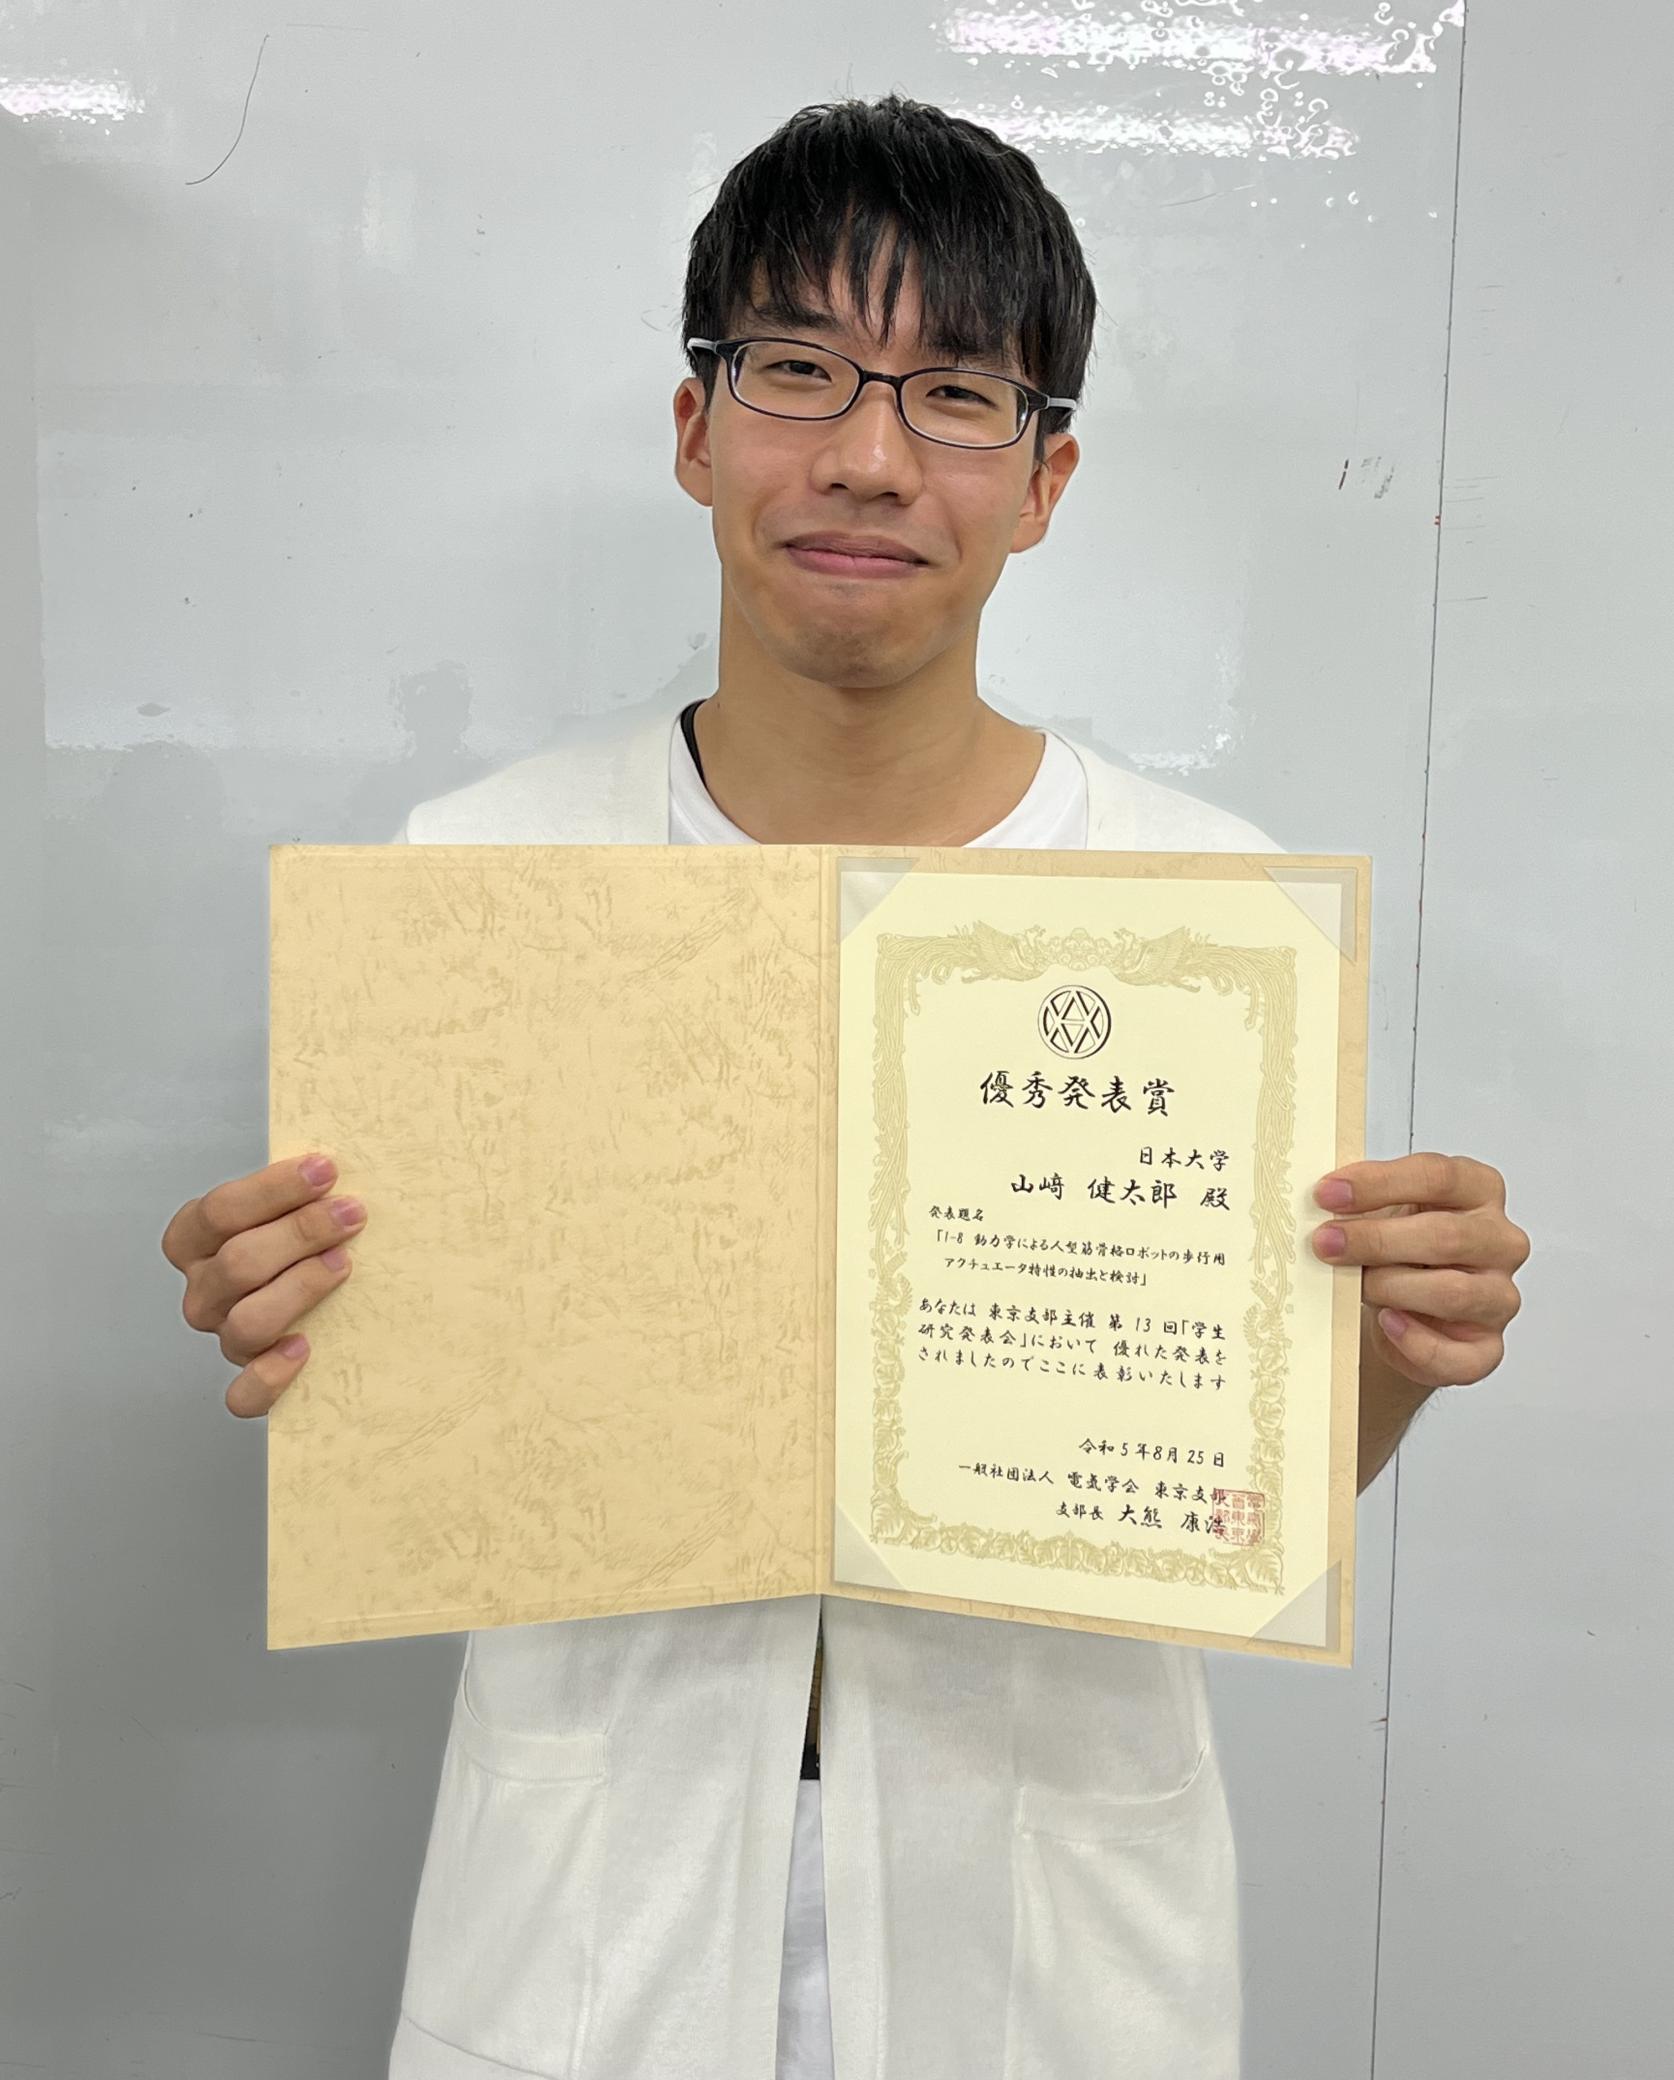 精密機械工学専攻修士1年山﨑健太郎さんが電気学会東京支部主催「第13 回学生研究発表会」において優秀発表賞を受賞しました。